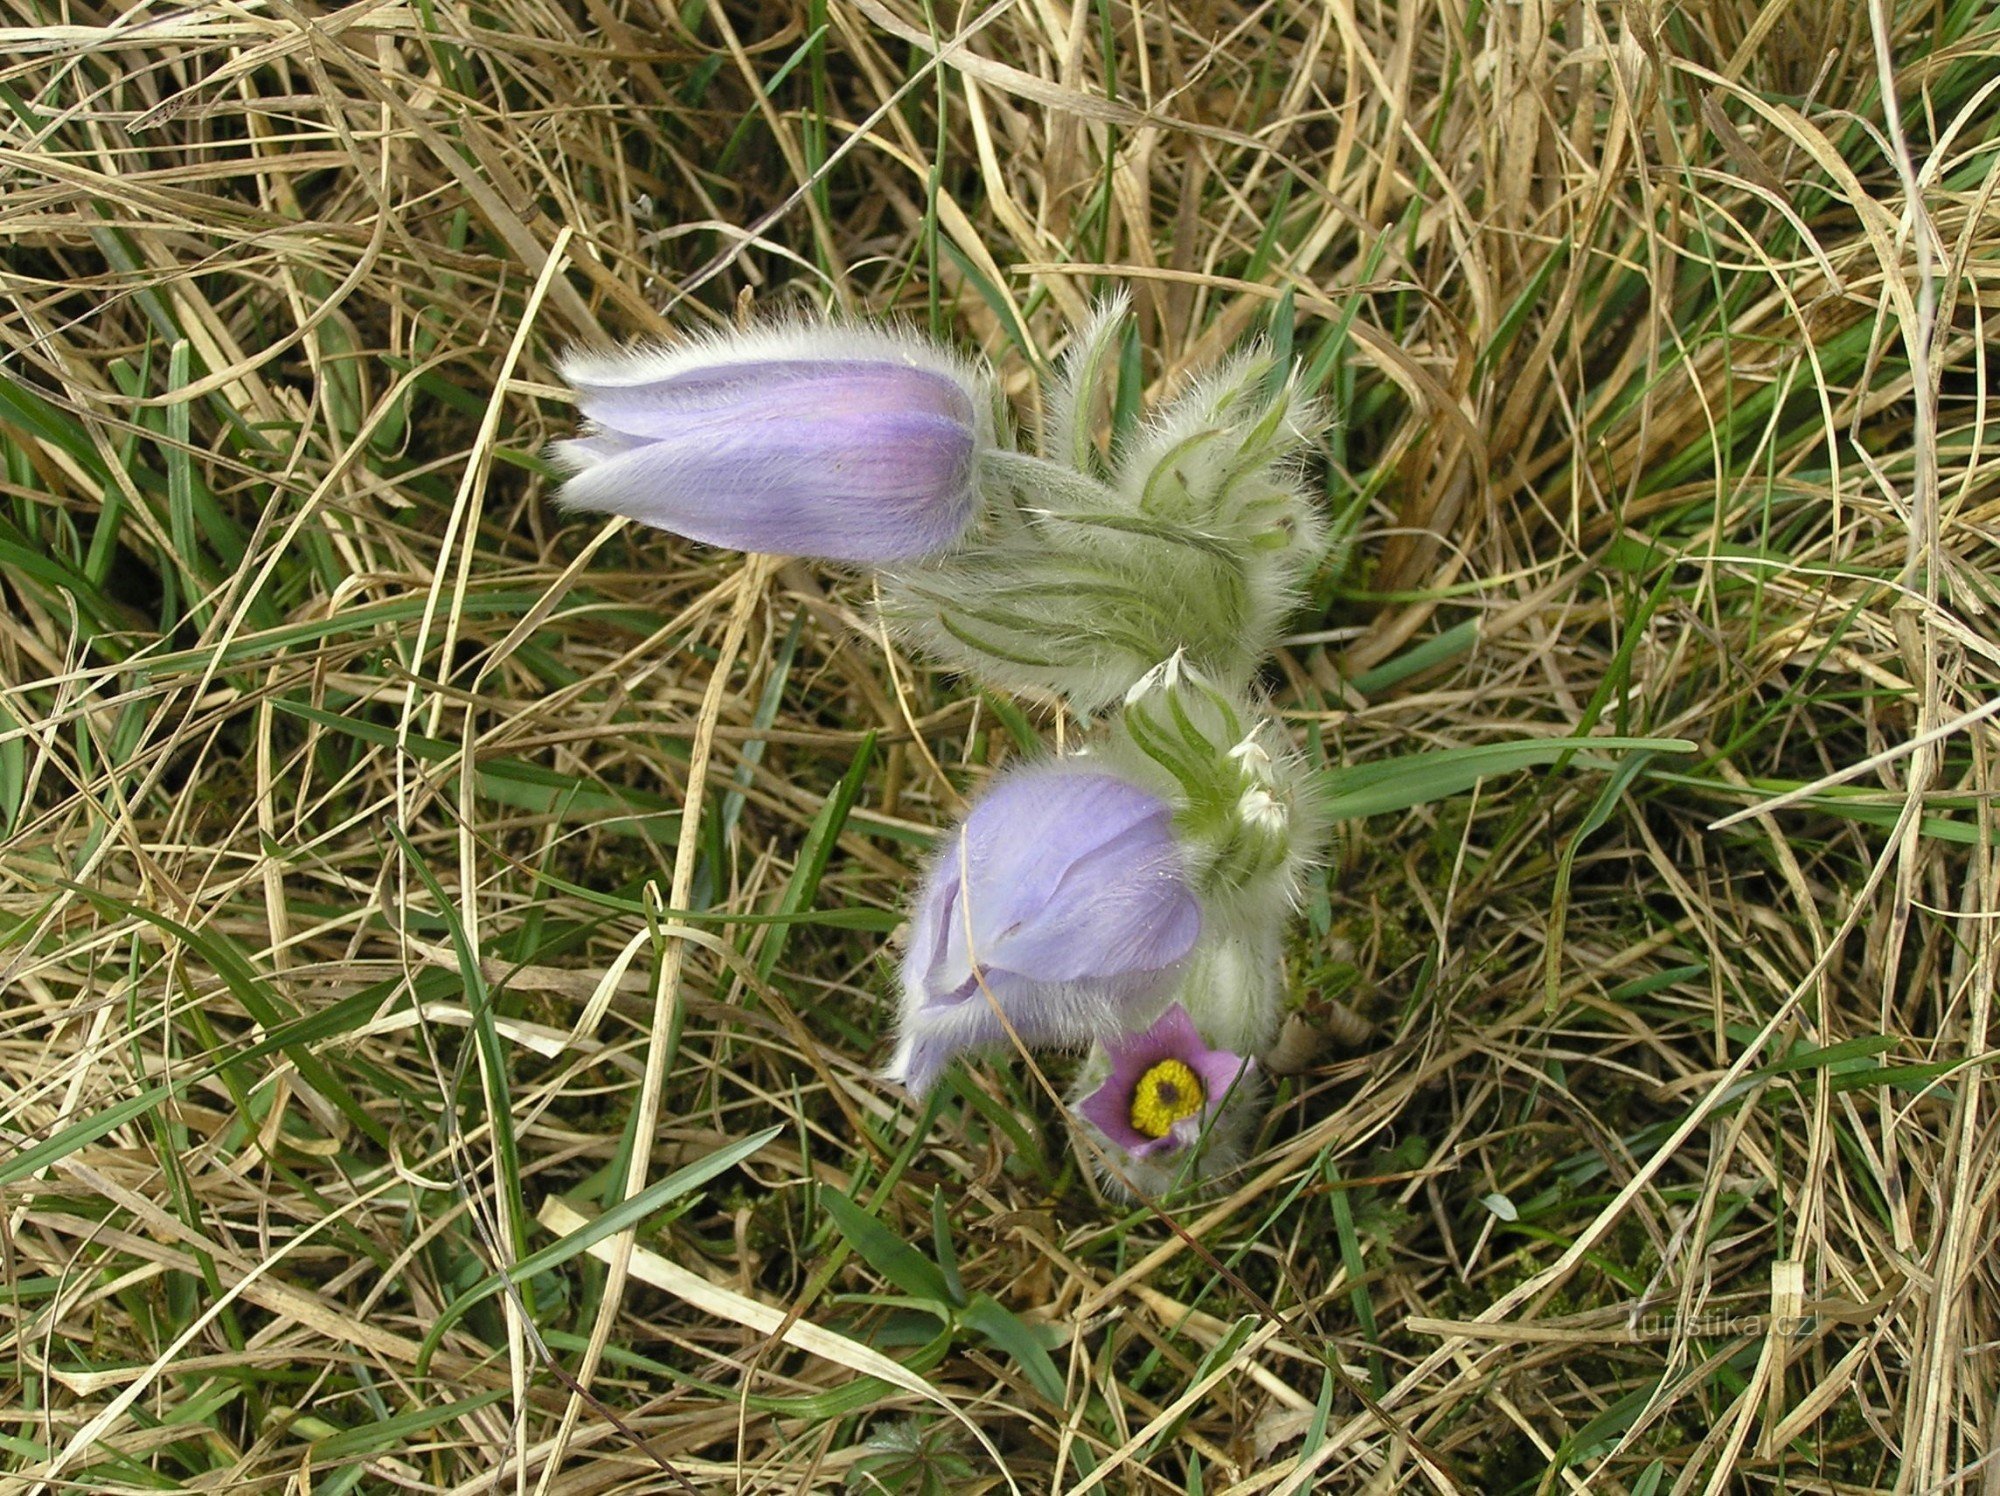 Σε λευκό πηλό - Pulsatilla grandis (Pulsatilla grandis) (Απρίλιος 2011)